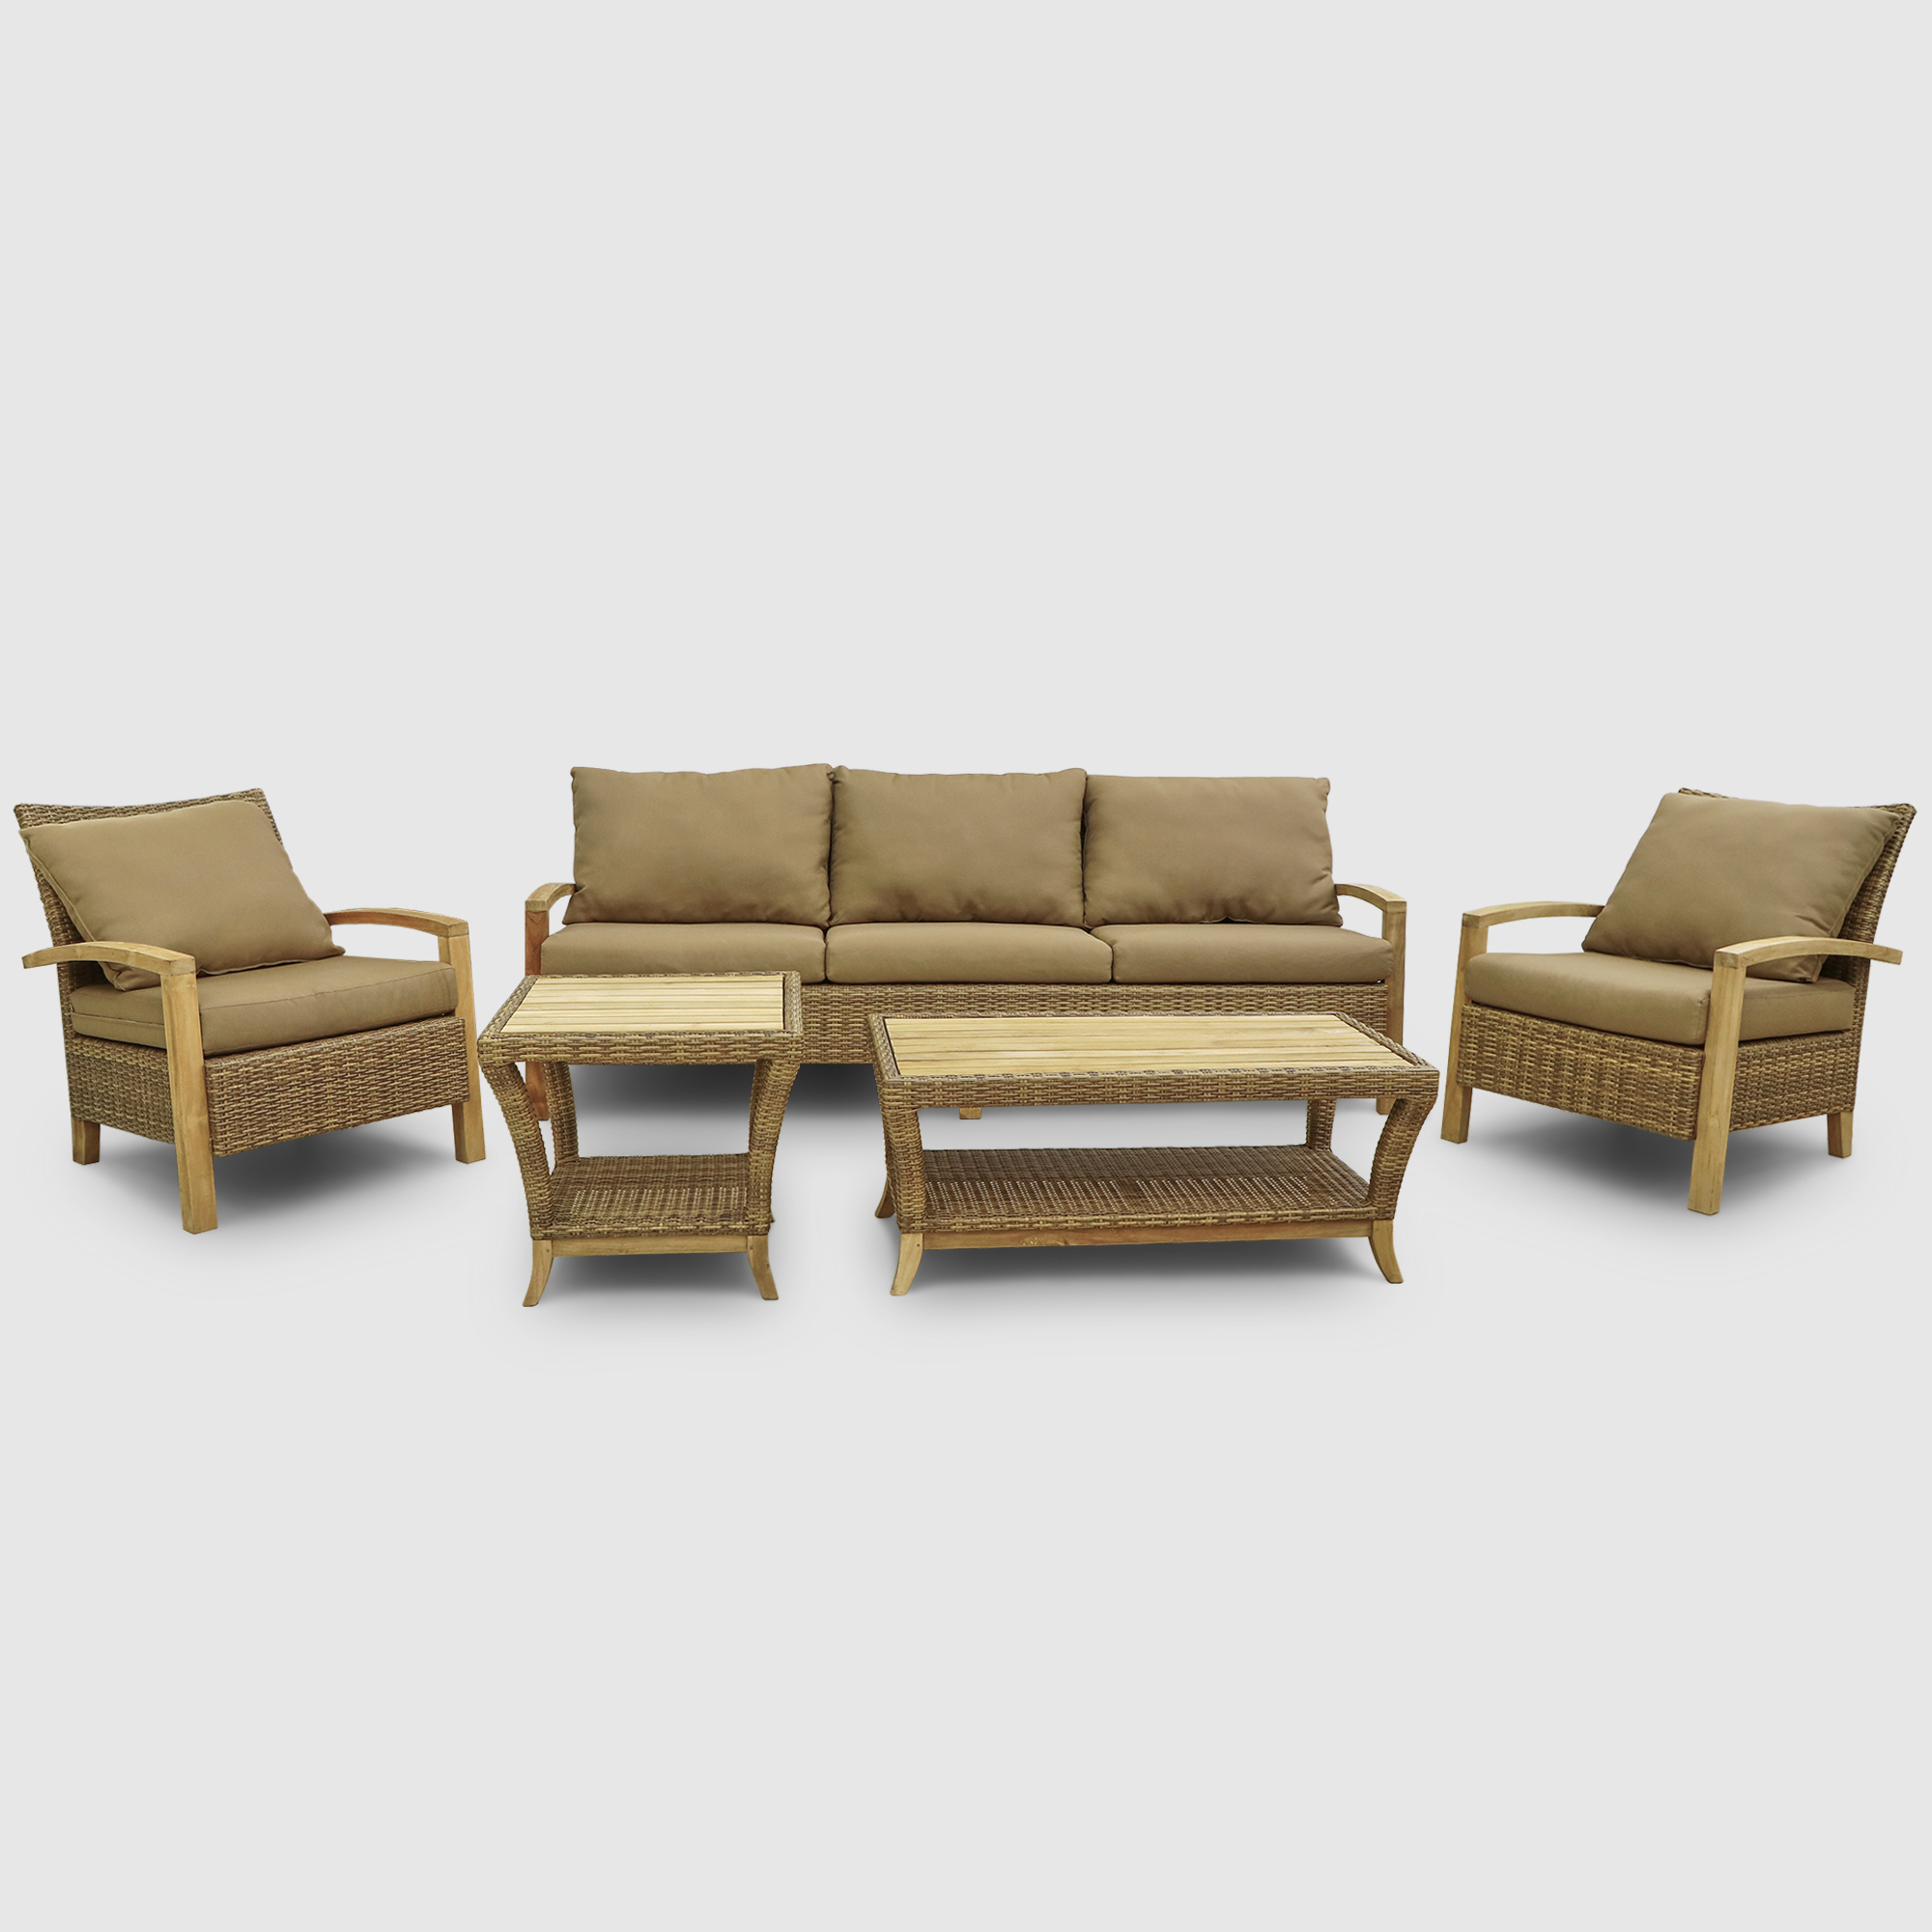 Комплект мебели Jepara Bastian 5 предметов, цвет светло-коричневый, размер 240х88х125 - фото 1